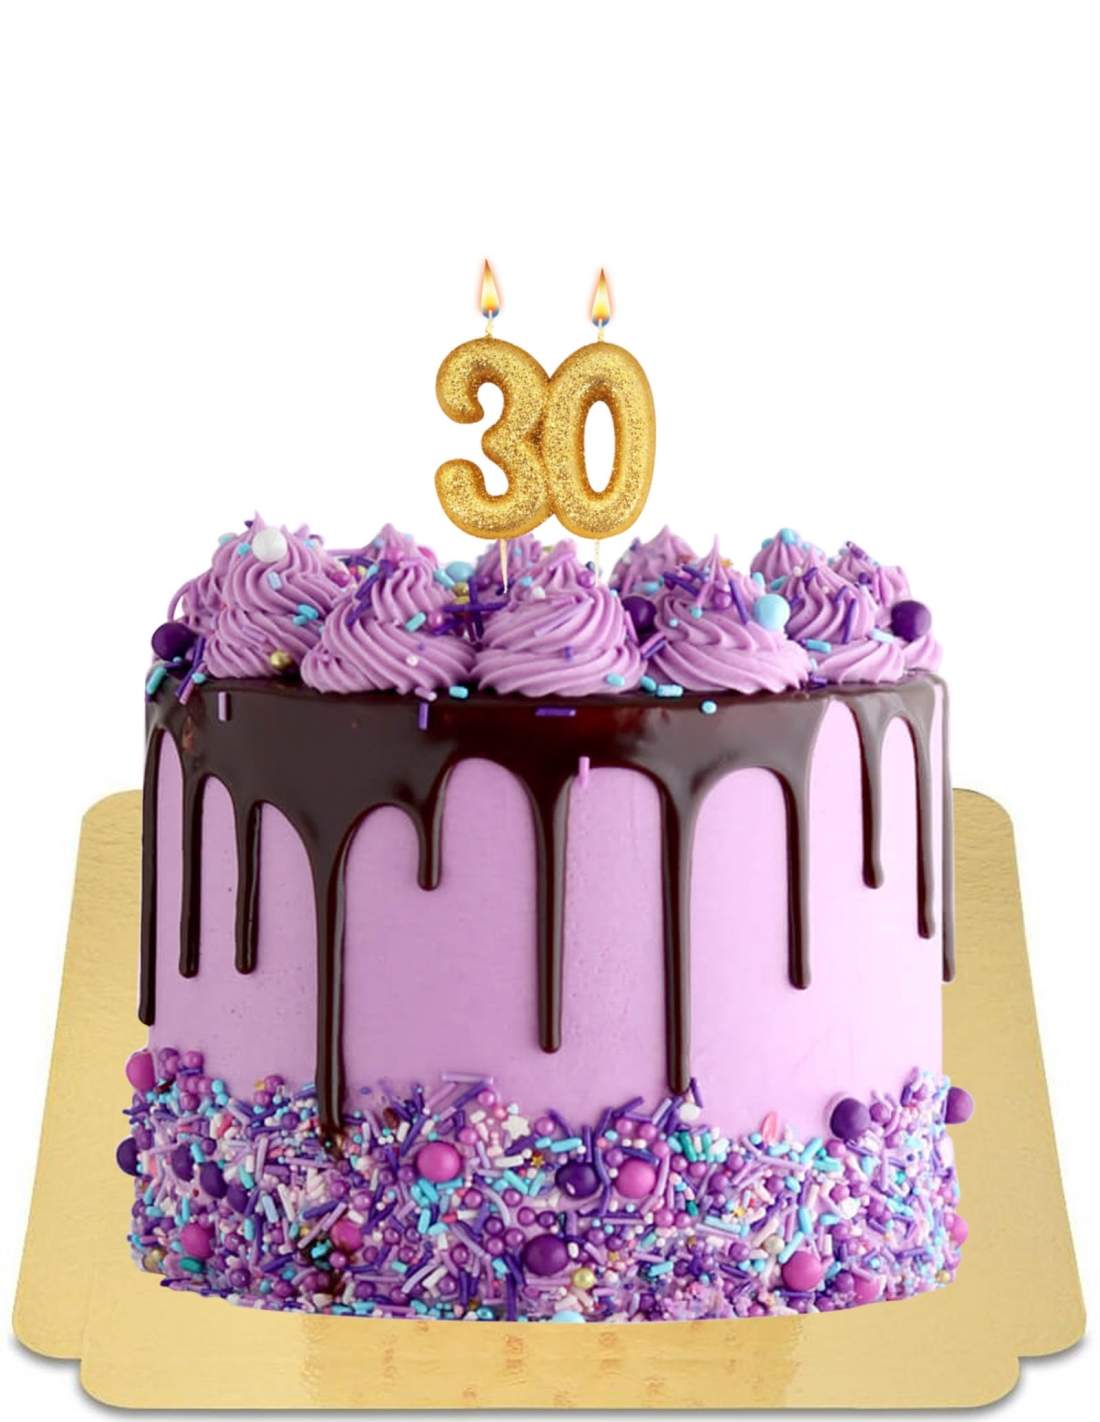 Drip cake rose et violet à confettis et meringues roses vegan, sans